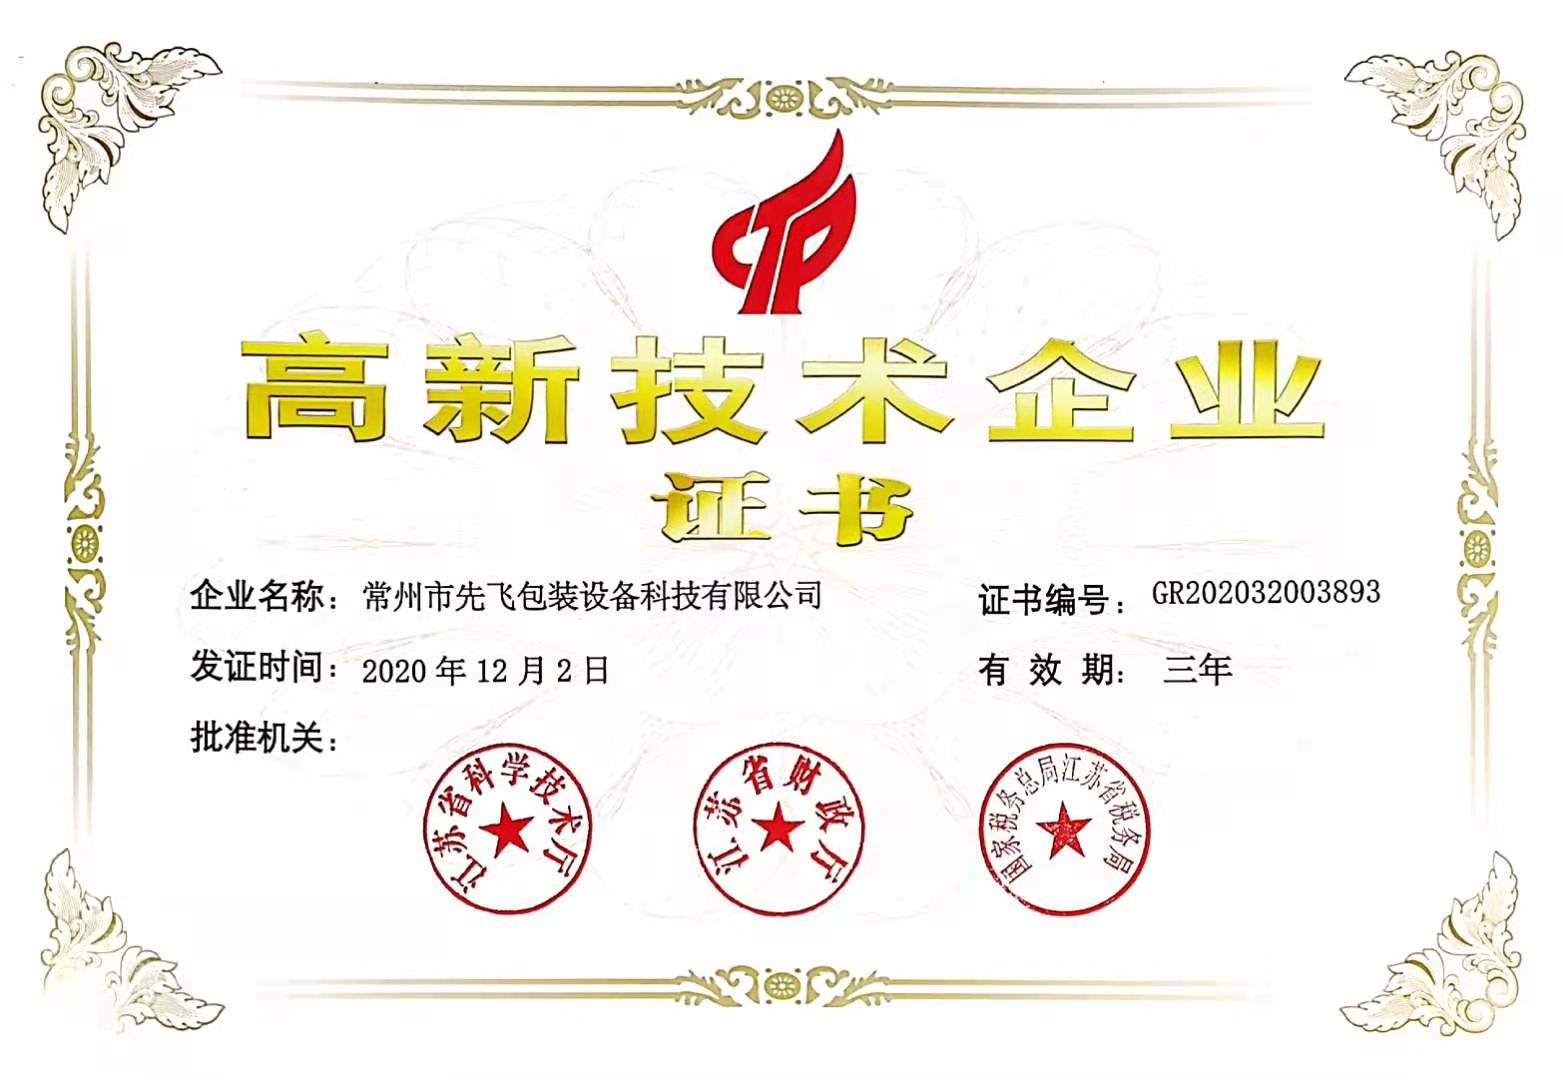 Chine Changzhou Xianfei Packing Equipment Technology Co., Ltd. Certifications